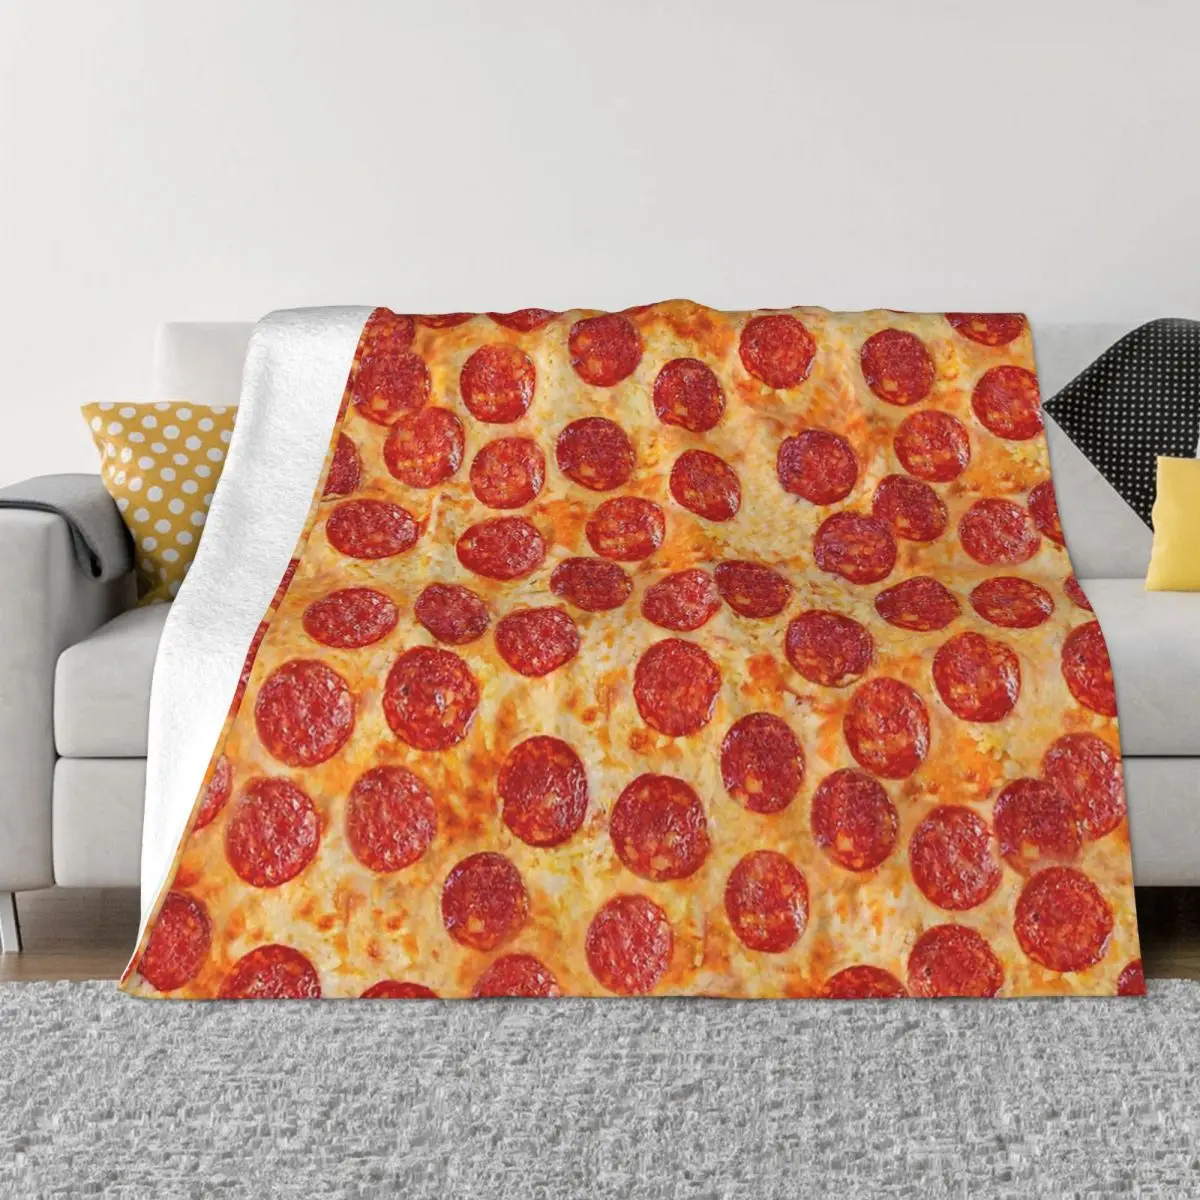 

Переносные теплые одеяла с рисунком перец, пиццы